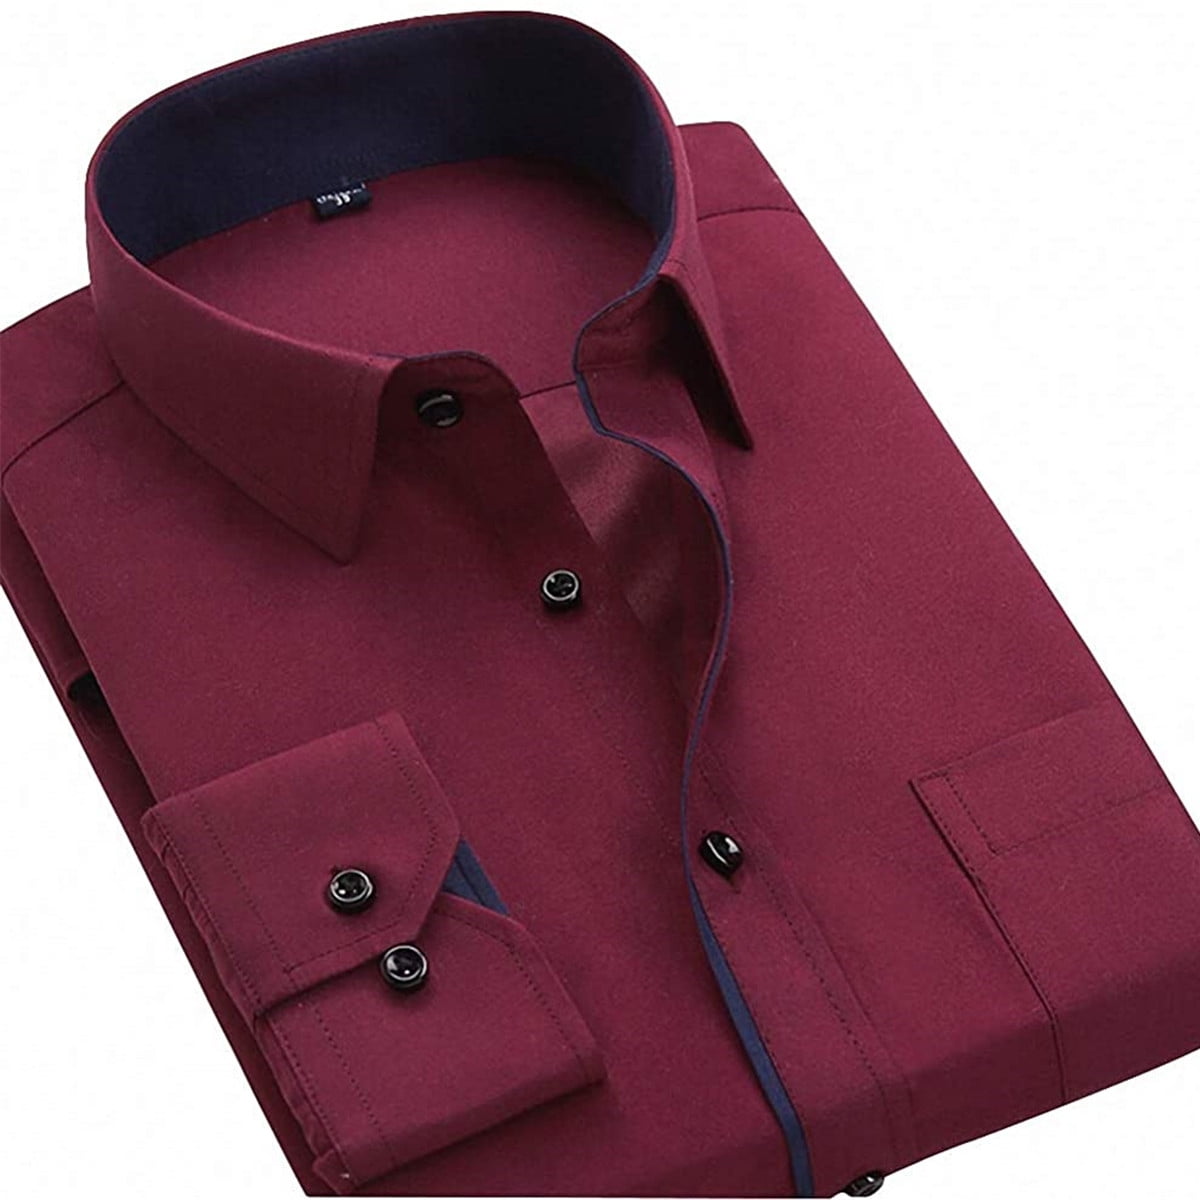 Calsunbaby Mens Long Sleeve Tops Business Work Dress Shirt Wine Red 4XL - Walmart.com